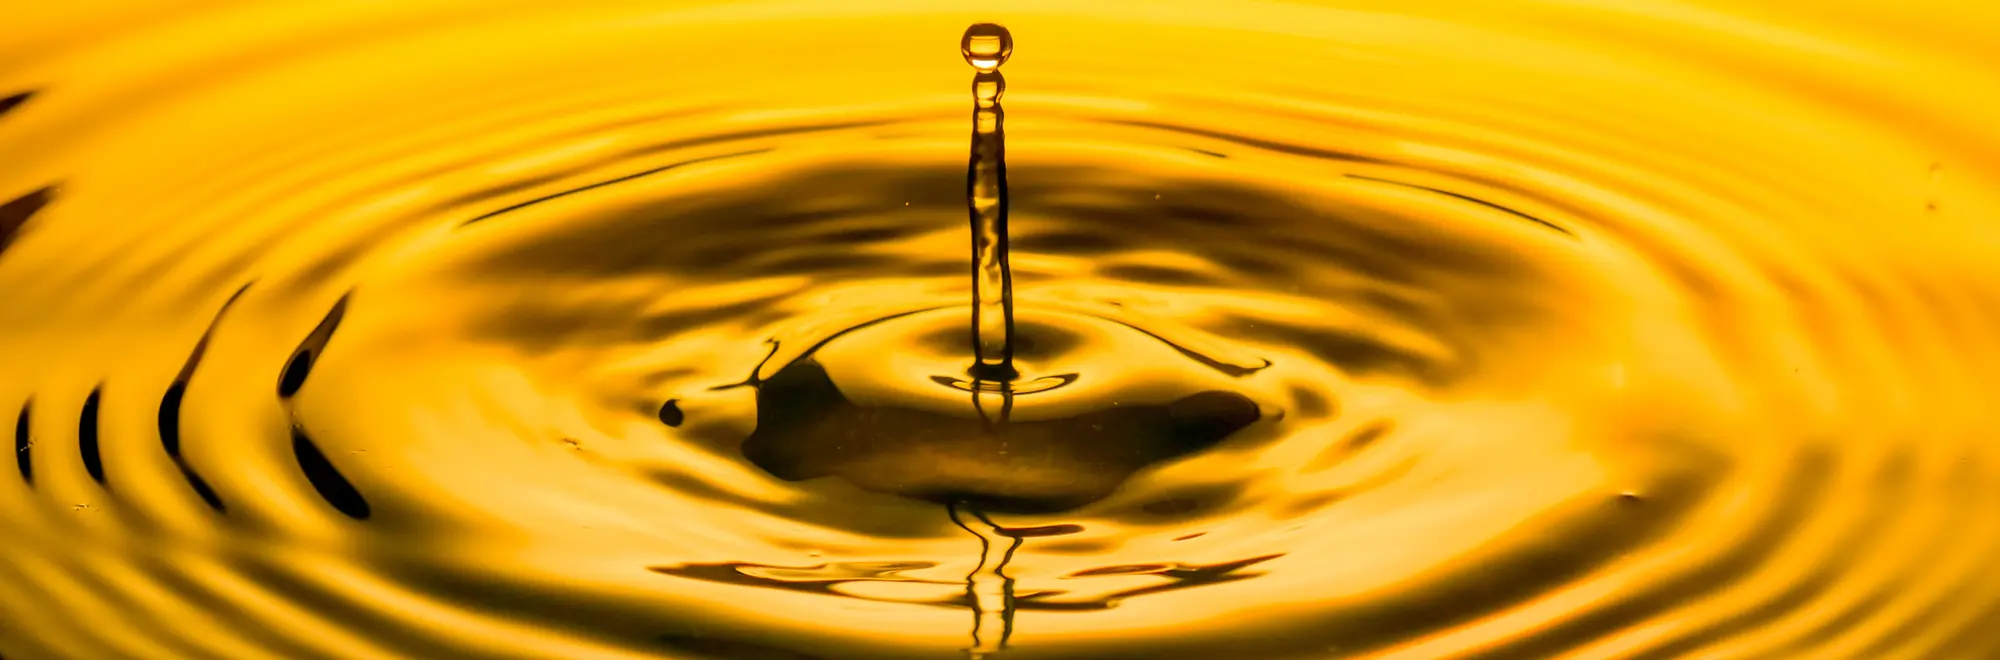 ¿Qué beneficios aporta el aceite prensado en frío?